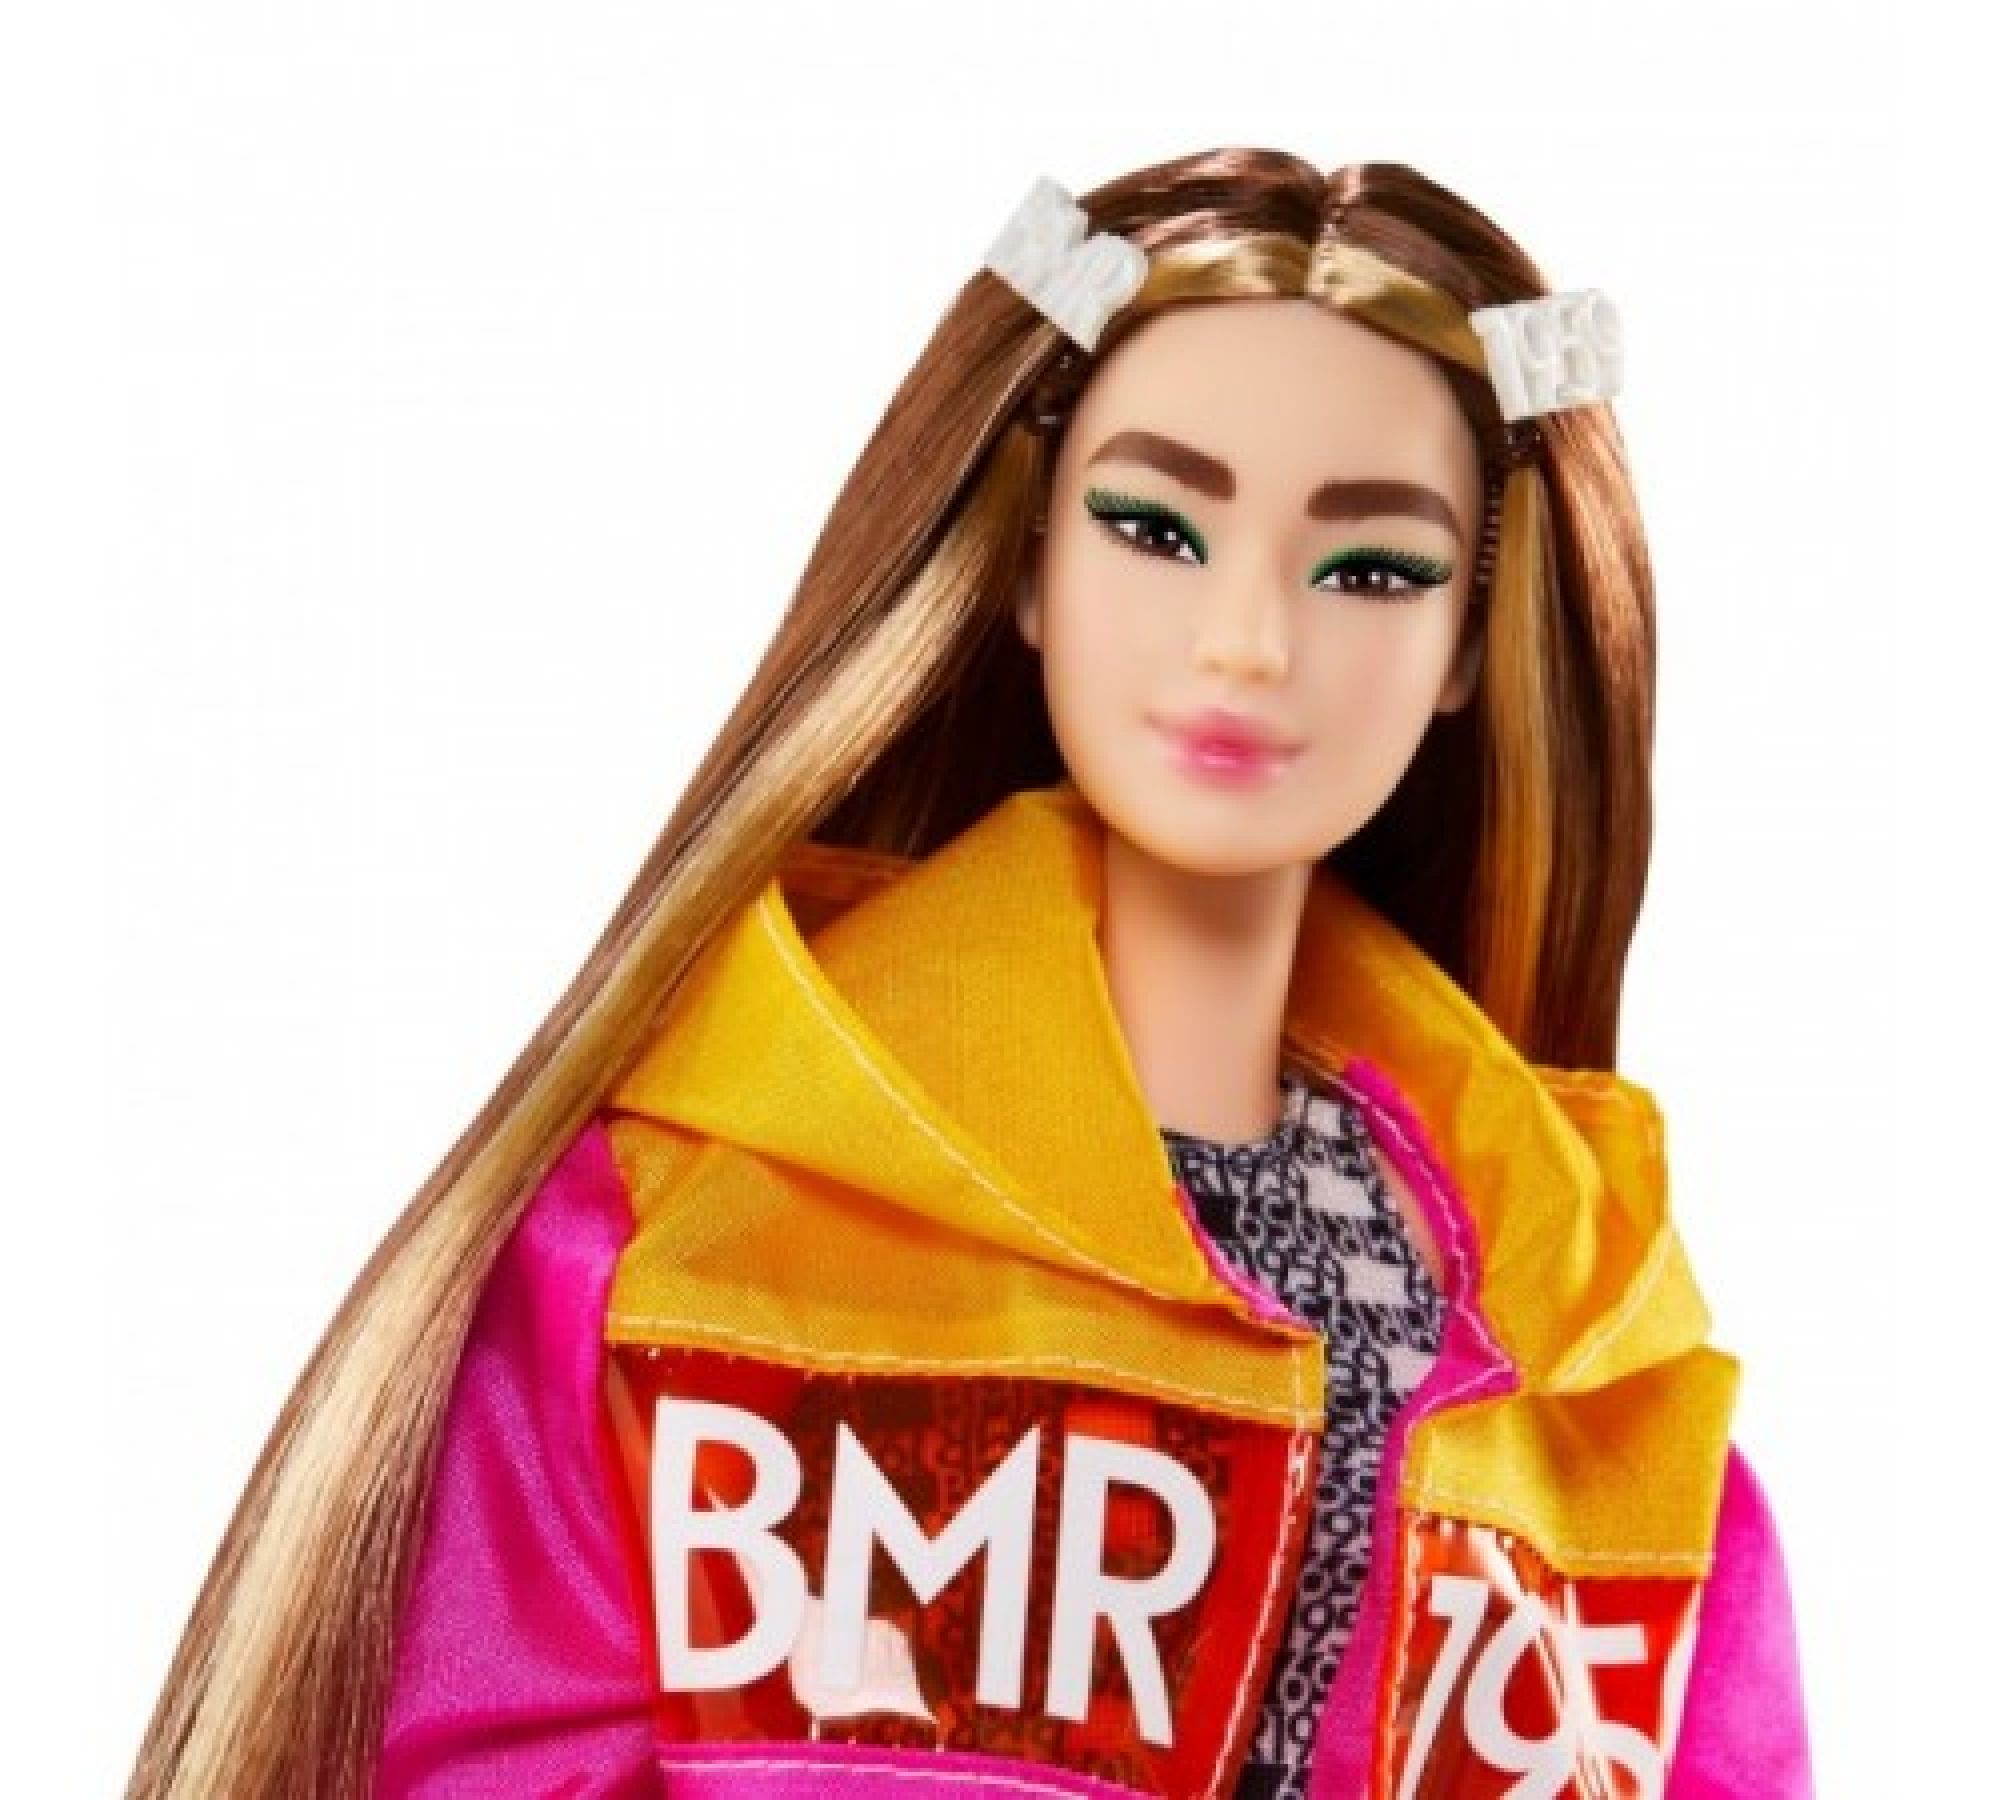 Кукла барби дай. Кукла Барби BMR 1959. Кукла Barbie bmr1959. Кукла Barbie коллекционная bmr1959. Кукла Mattel Barbie в розовом плаще bmr1959.